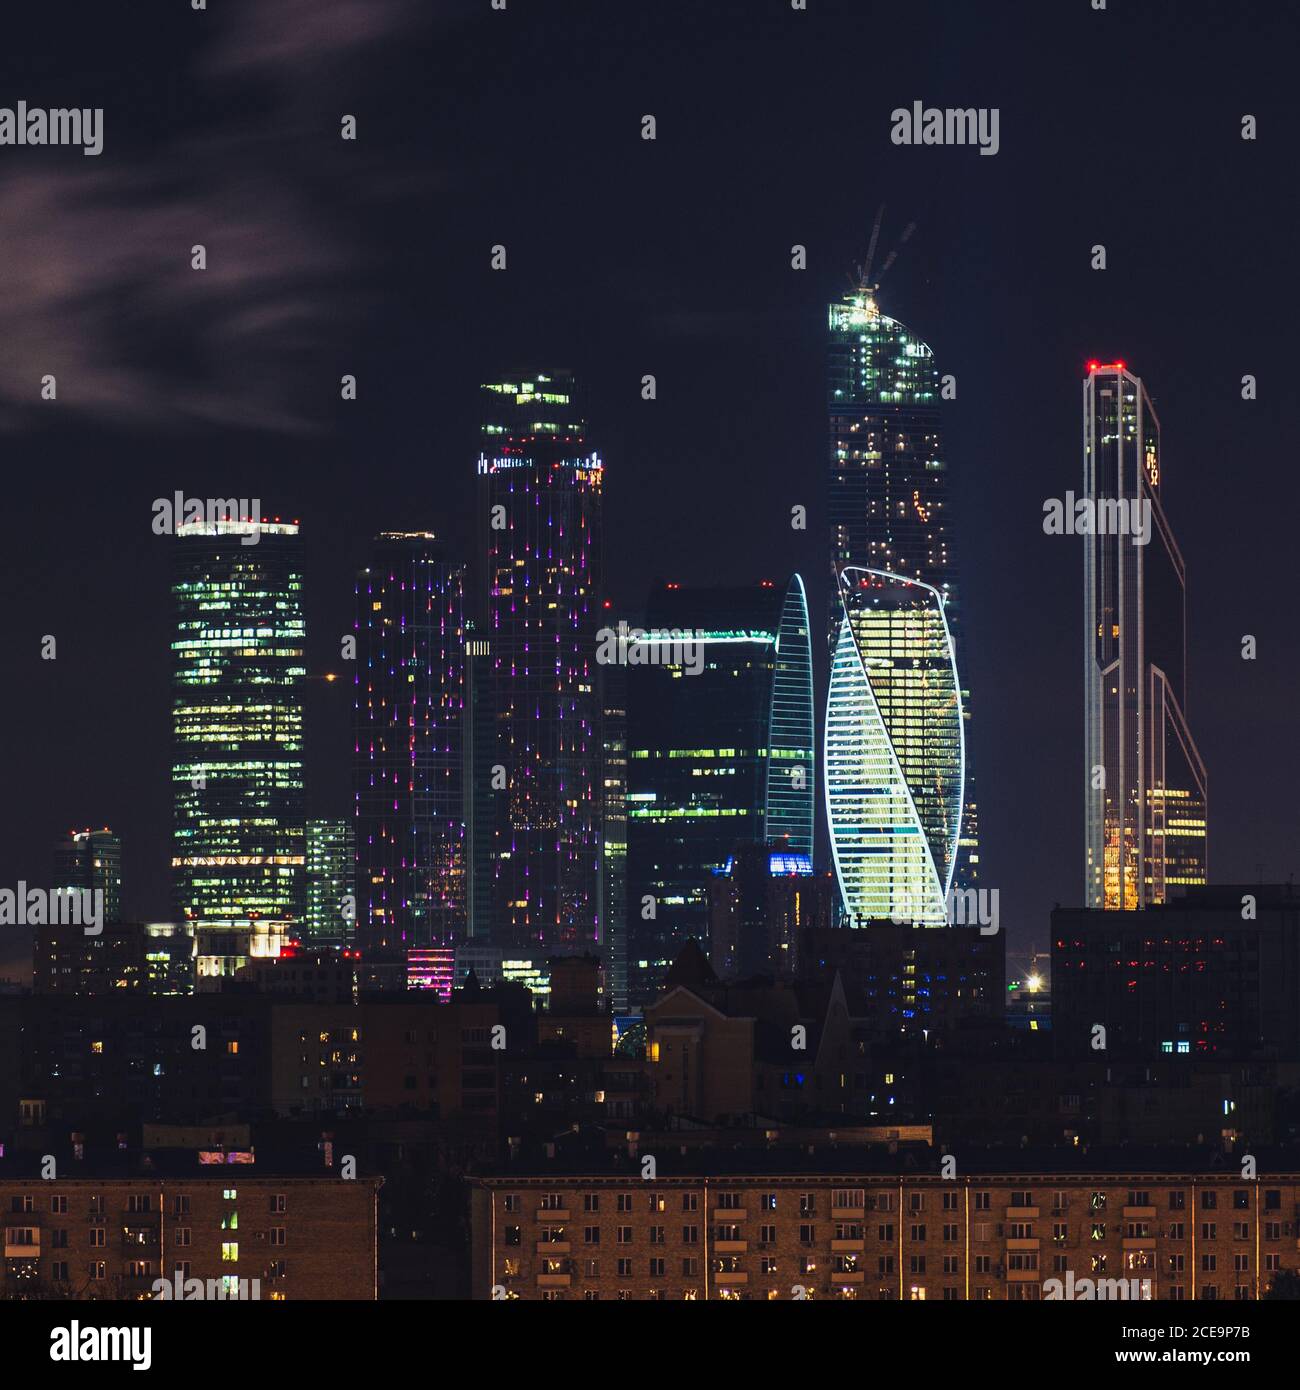 Wolkenkratzer von Moscow City Business Center bei Nacht, Russland. Architektur und Wahrzeichen von Moskau. Höhepunkt der Dreharbeiten Stockfoto